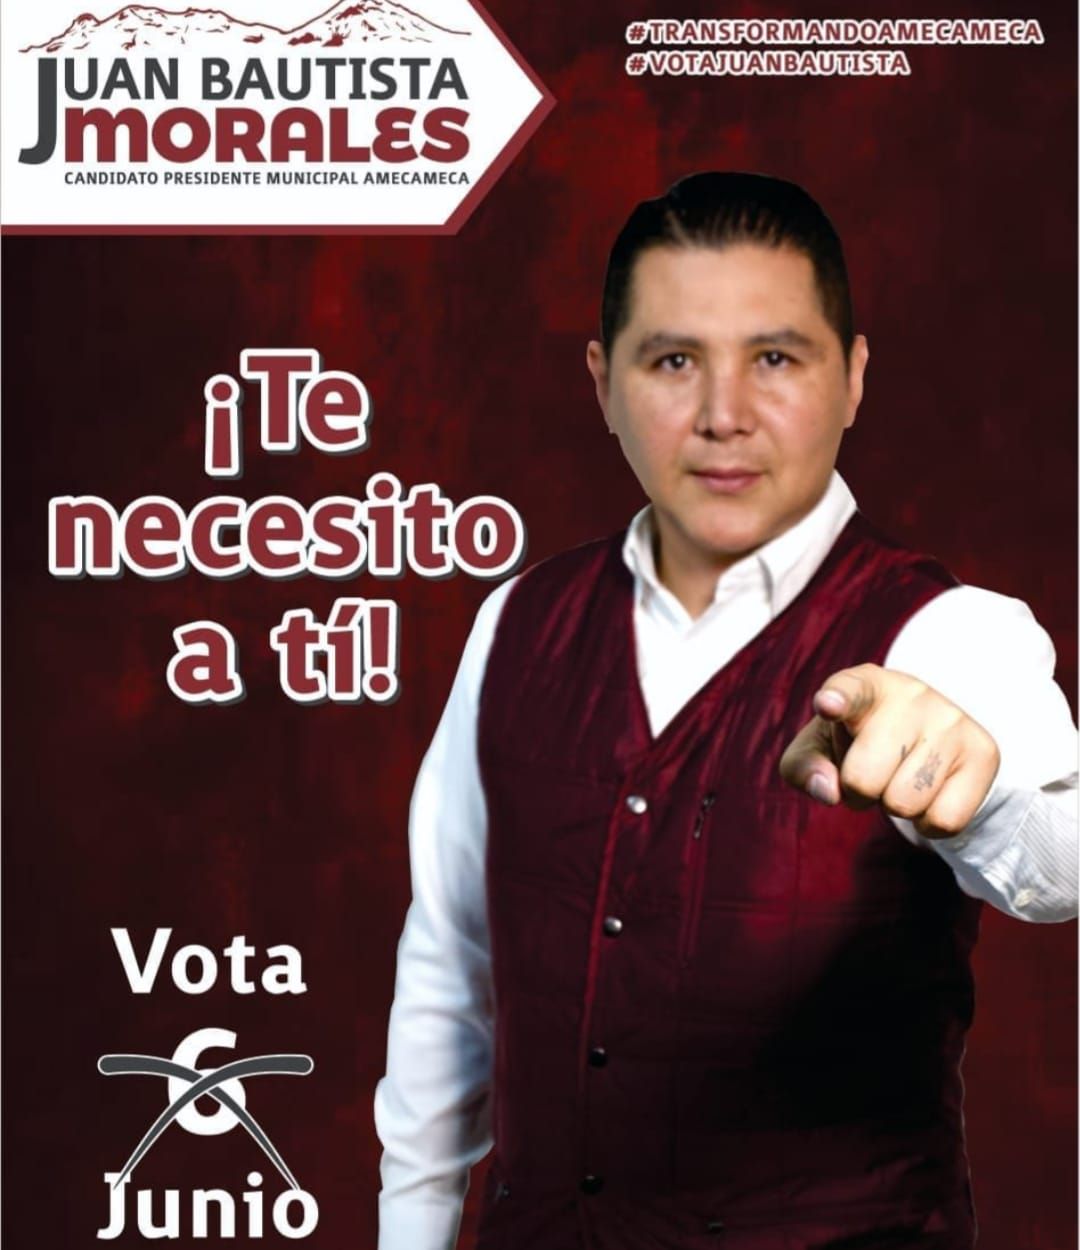 #En Amecameca asesinaron a Juan Bautista Morales, quien fuera candidato de MORENA a la alcaldía